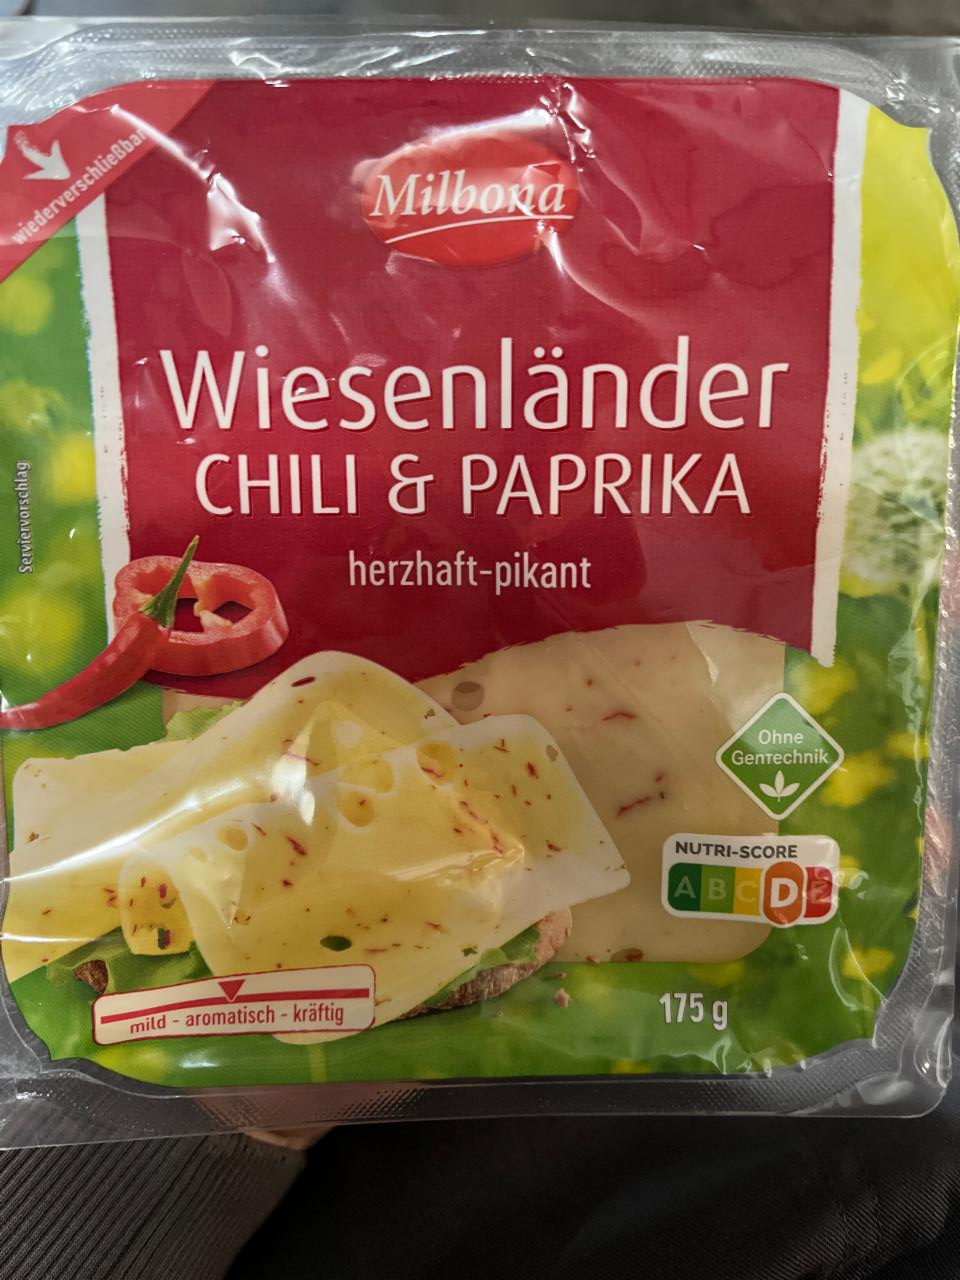 Zdjęcia - Wiesenlander Chili & paprika Milbona